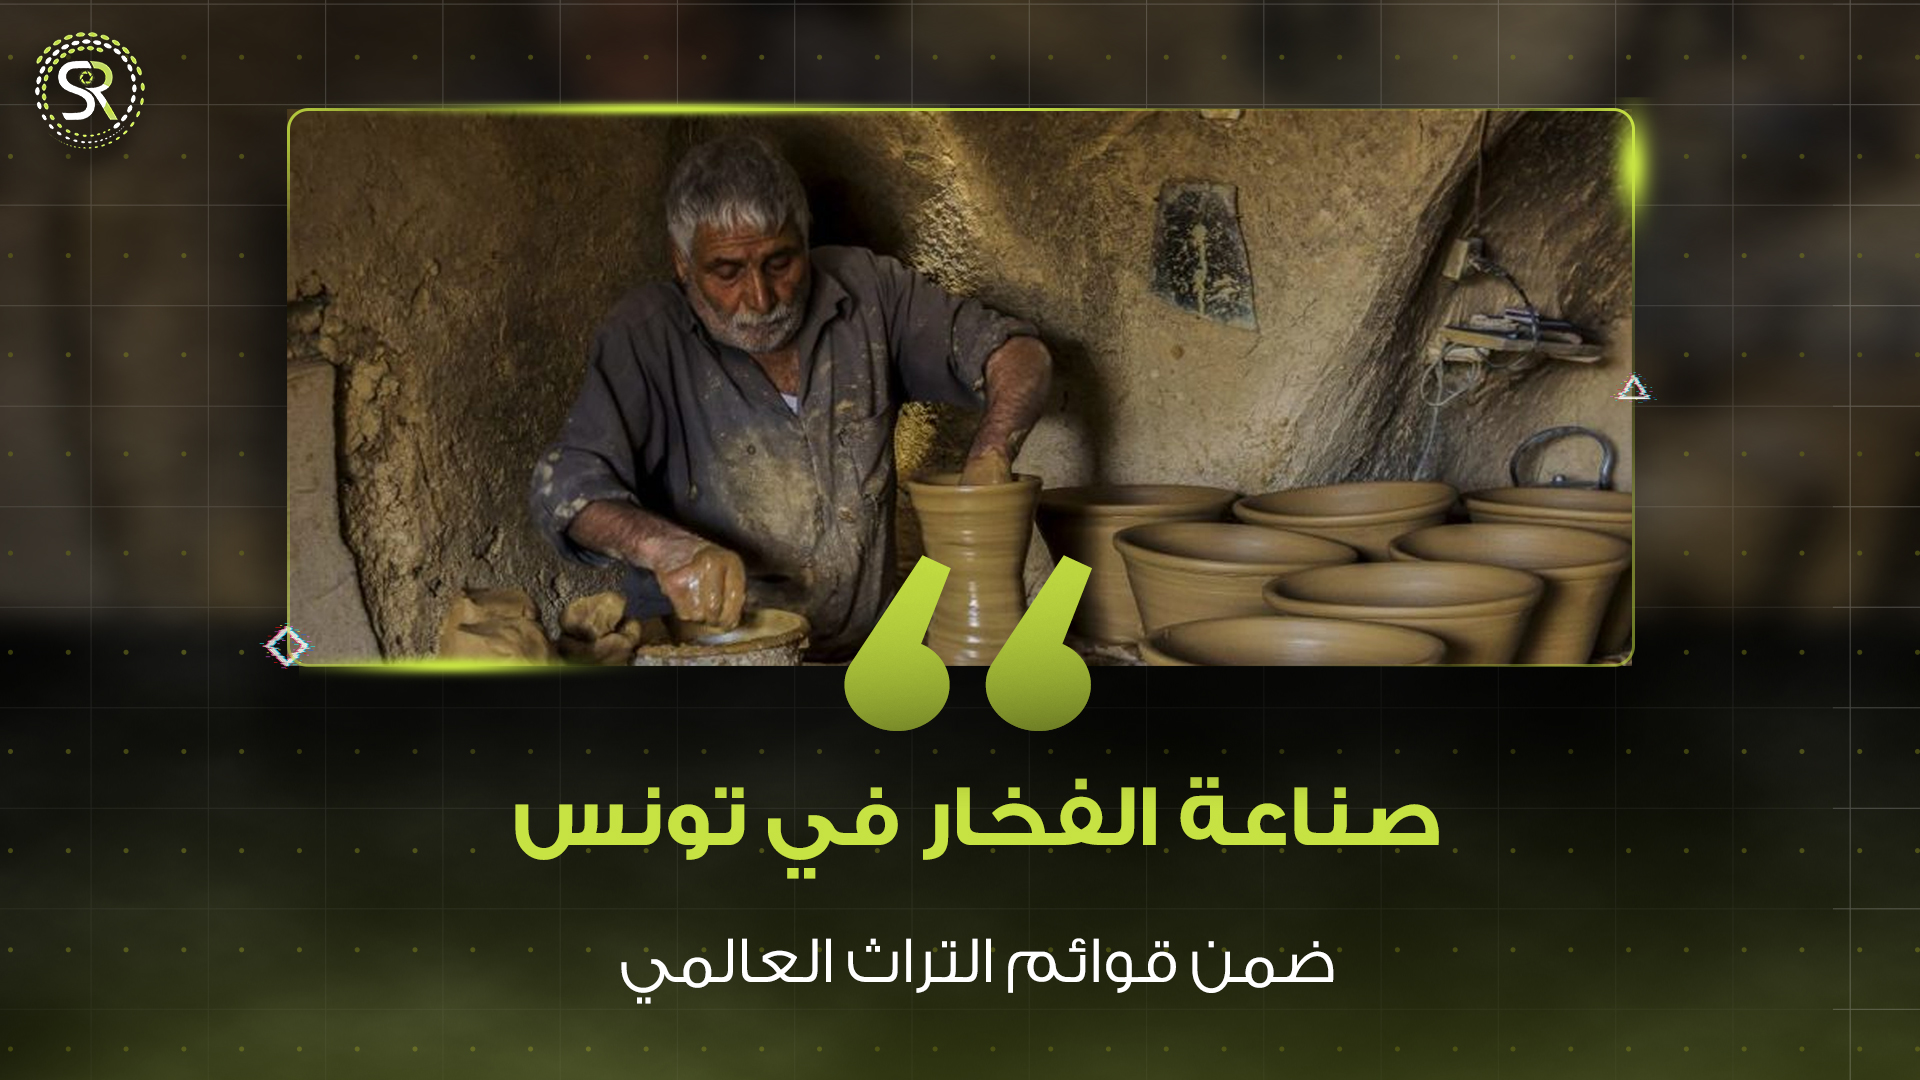 صناعة الفخار في تونس .. على قائمة التراث العالمي